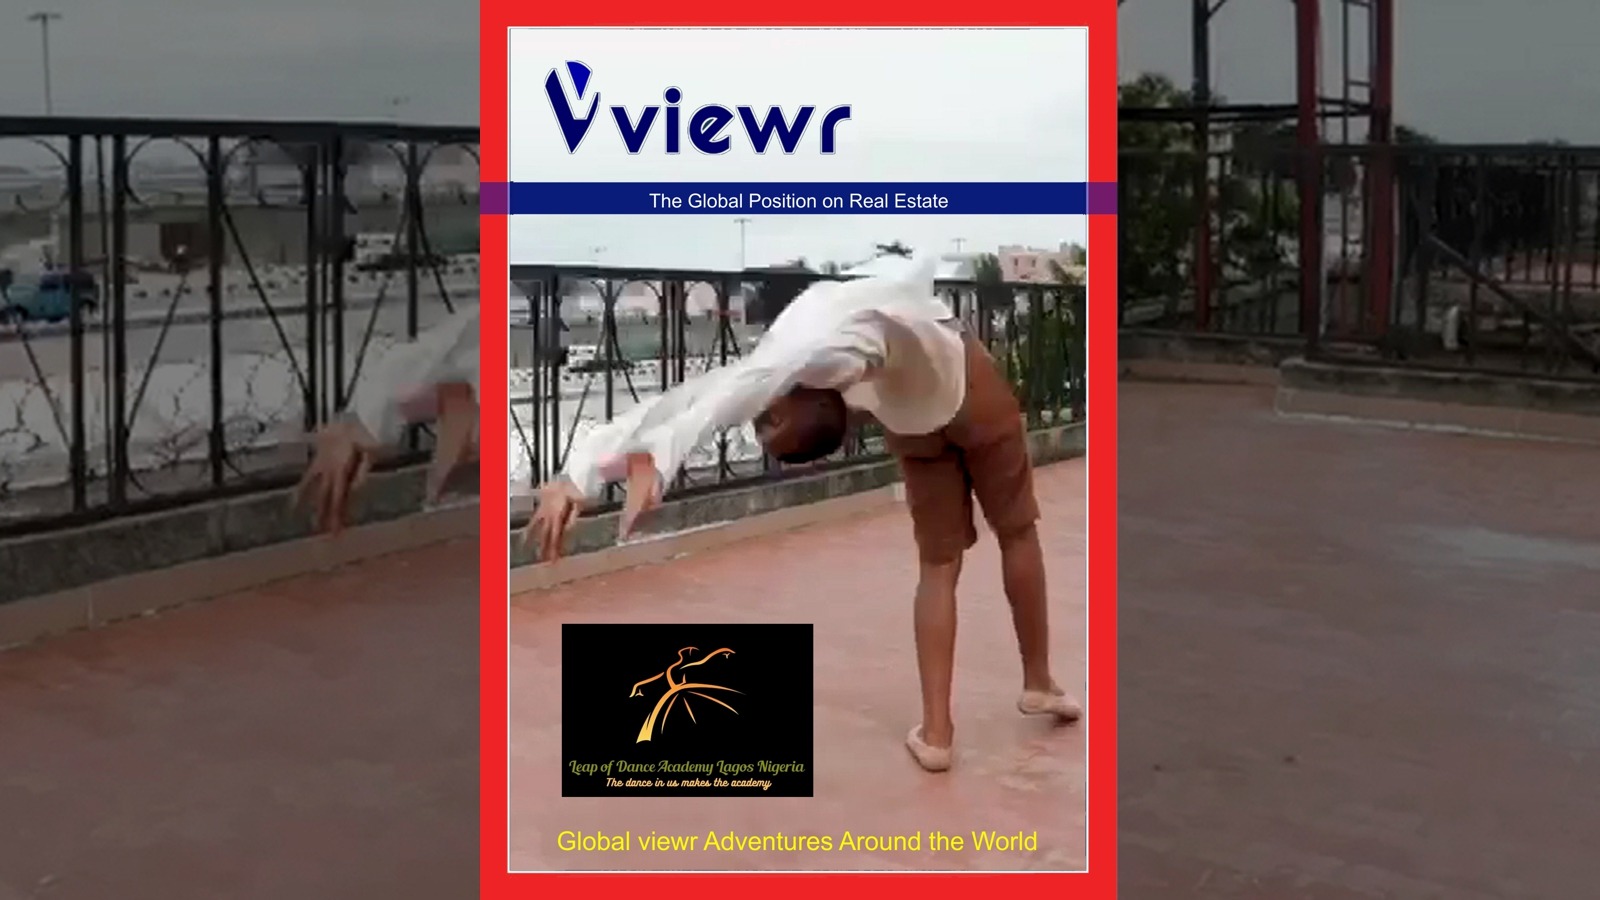 Anthony Mmesoma Madu Leap of Dance on Global viewr Magazine